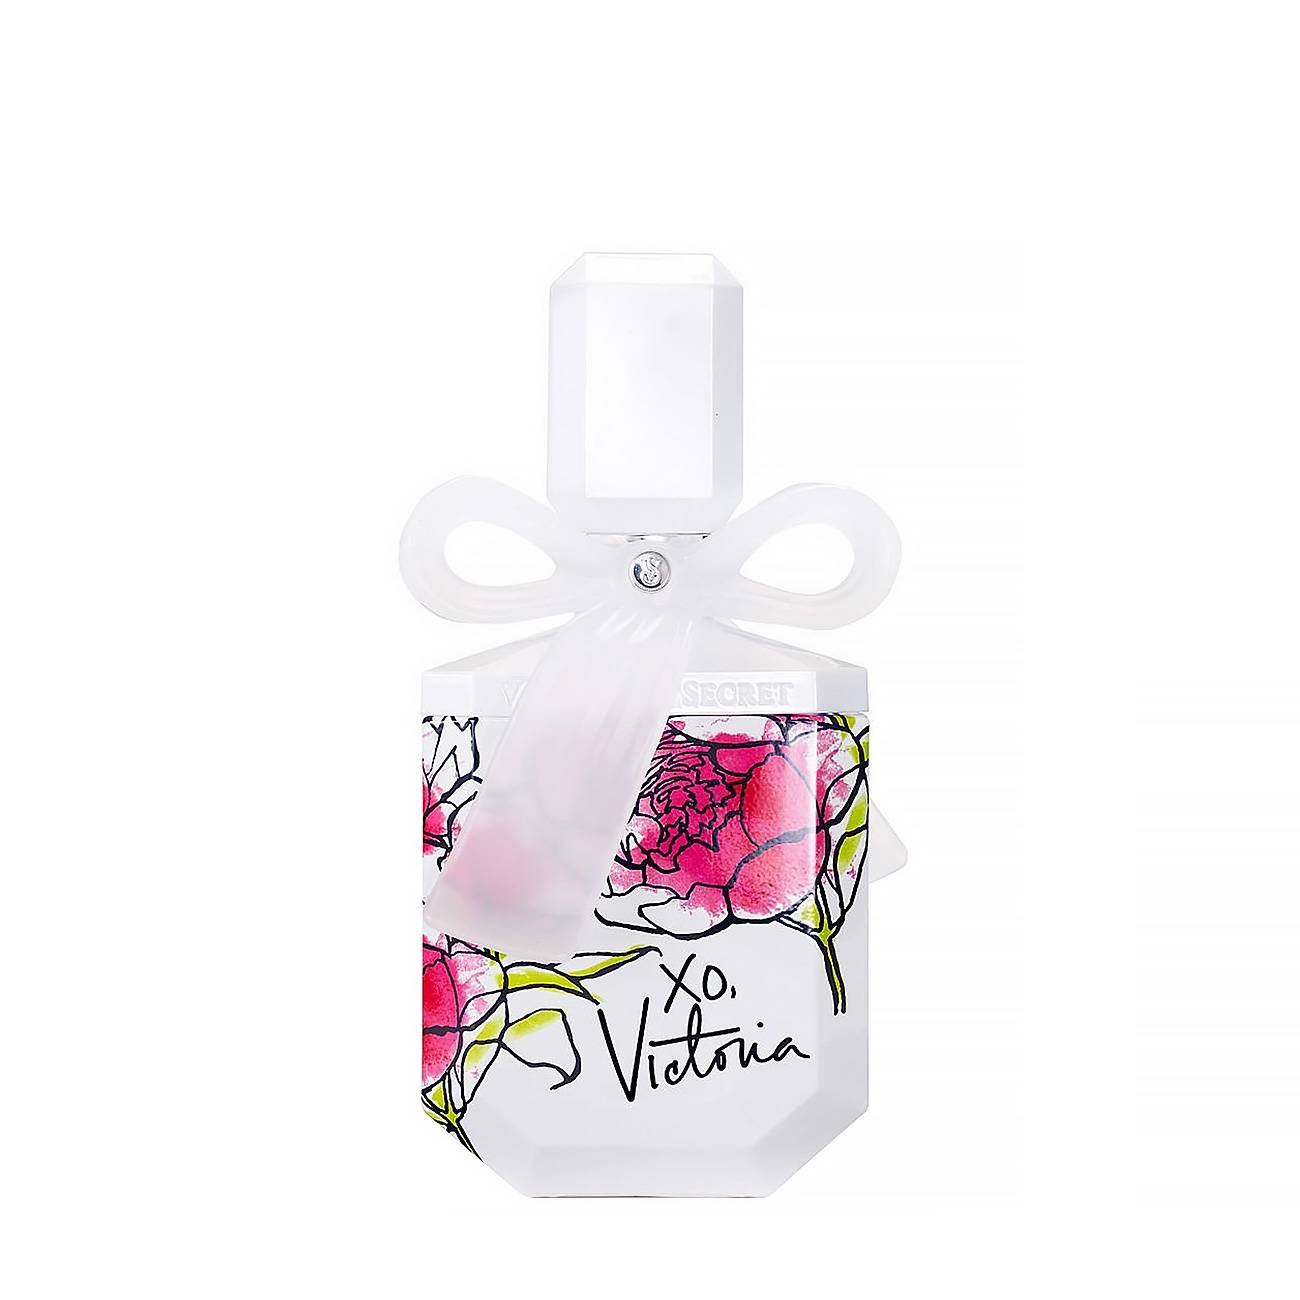 Apa de Parfum Victoria's Secret XO VICTORIA 100ml cu comanda online